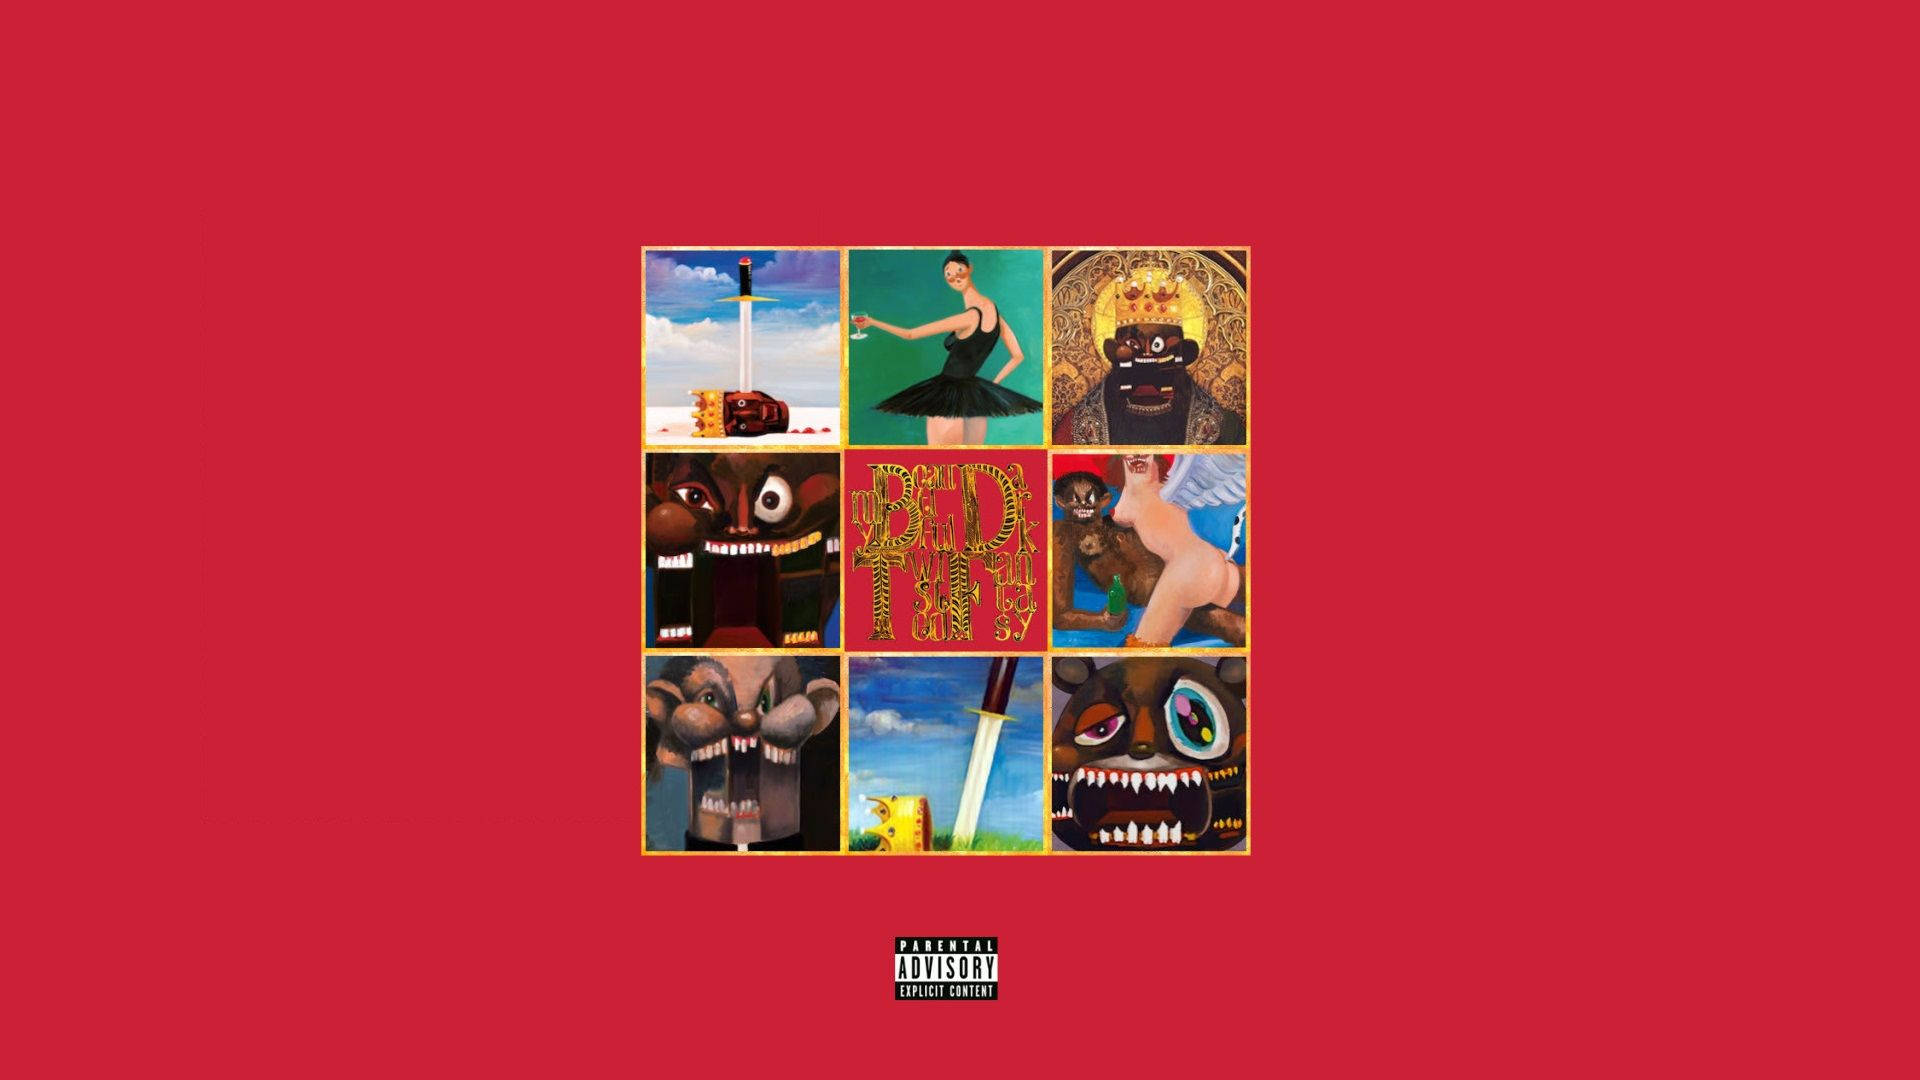 Kanye West In His Eightieth Studio Album Cover. Wallpaper